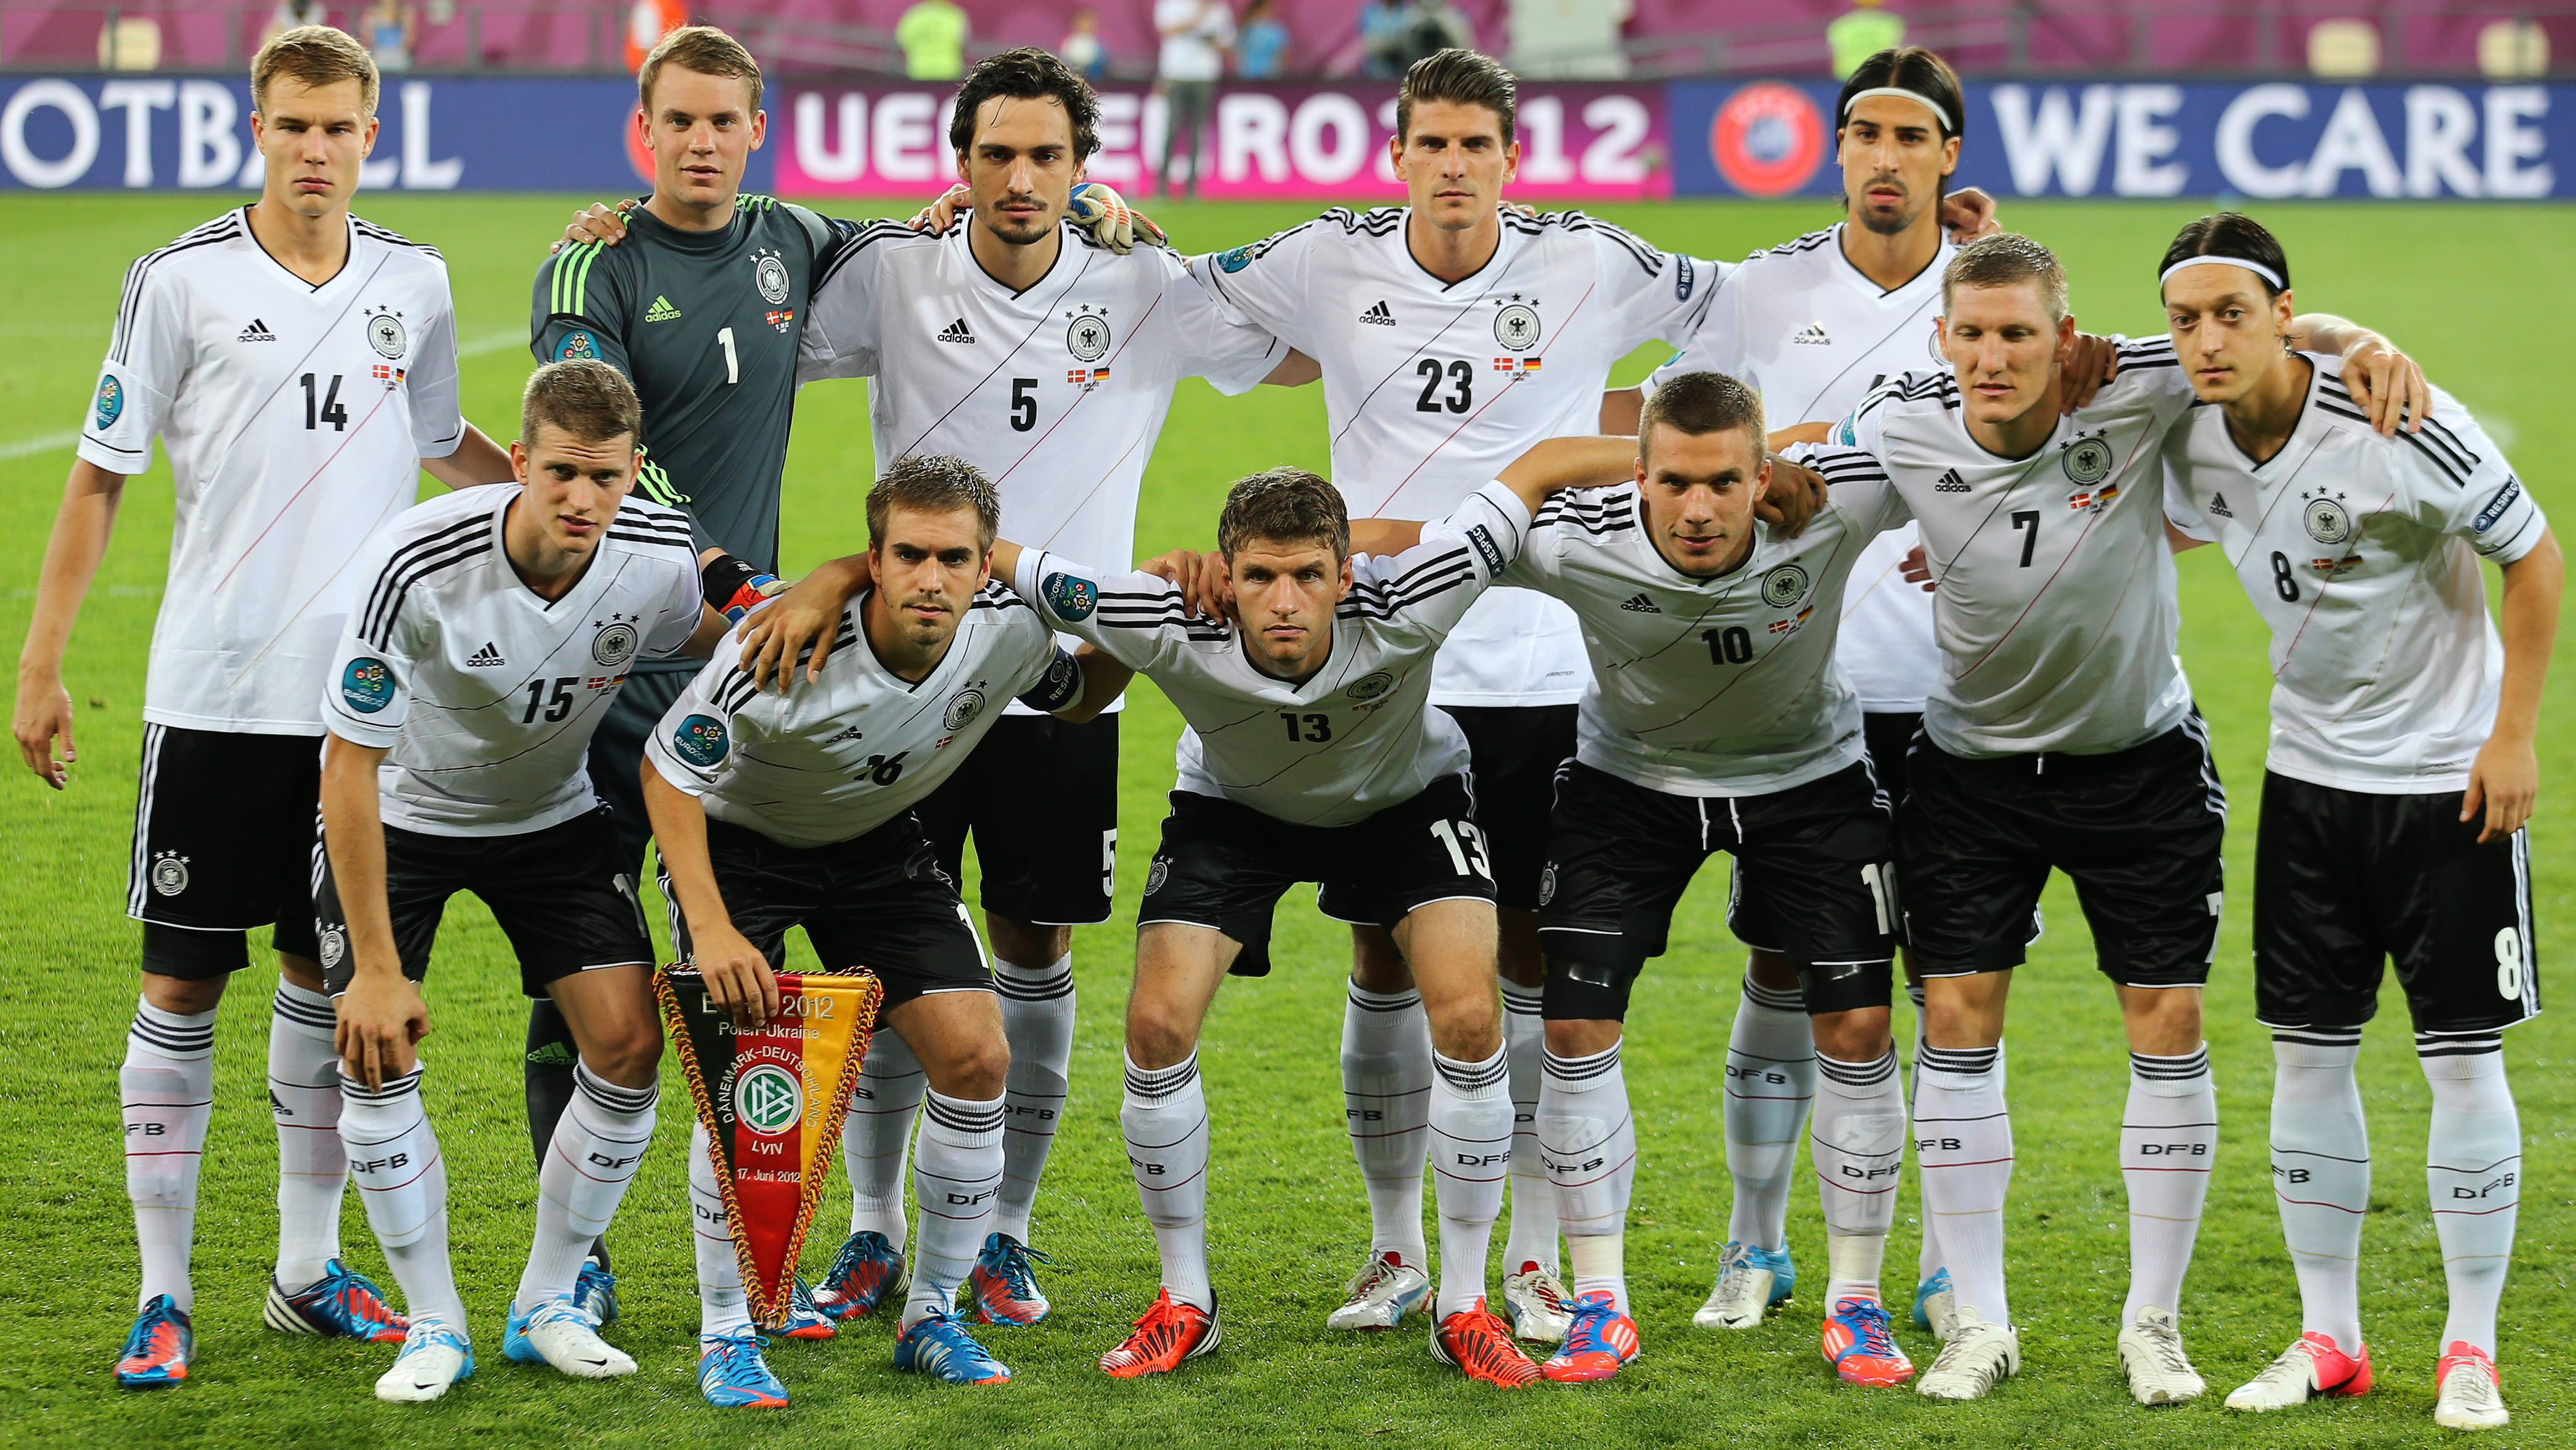 Alemania apuesta por la tecnología en el futbol